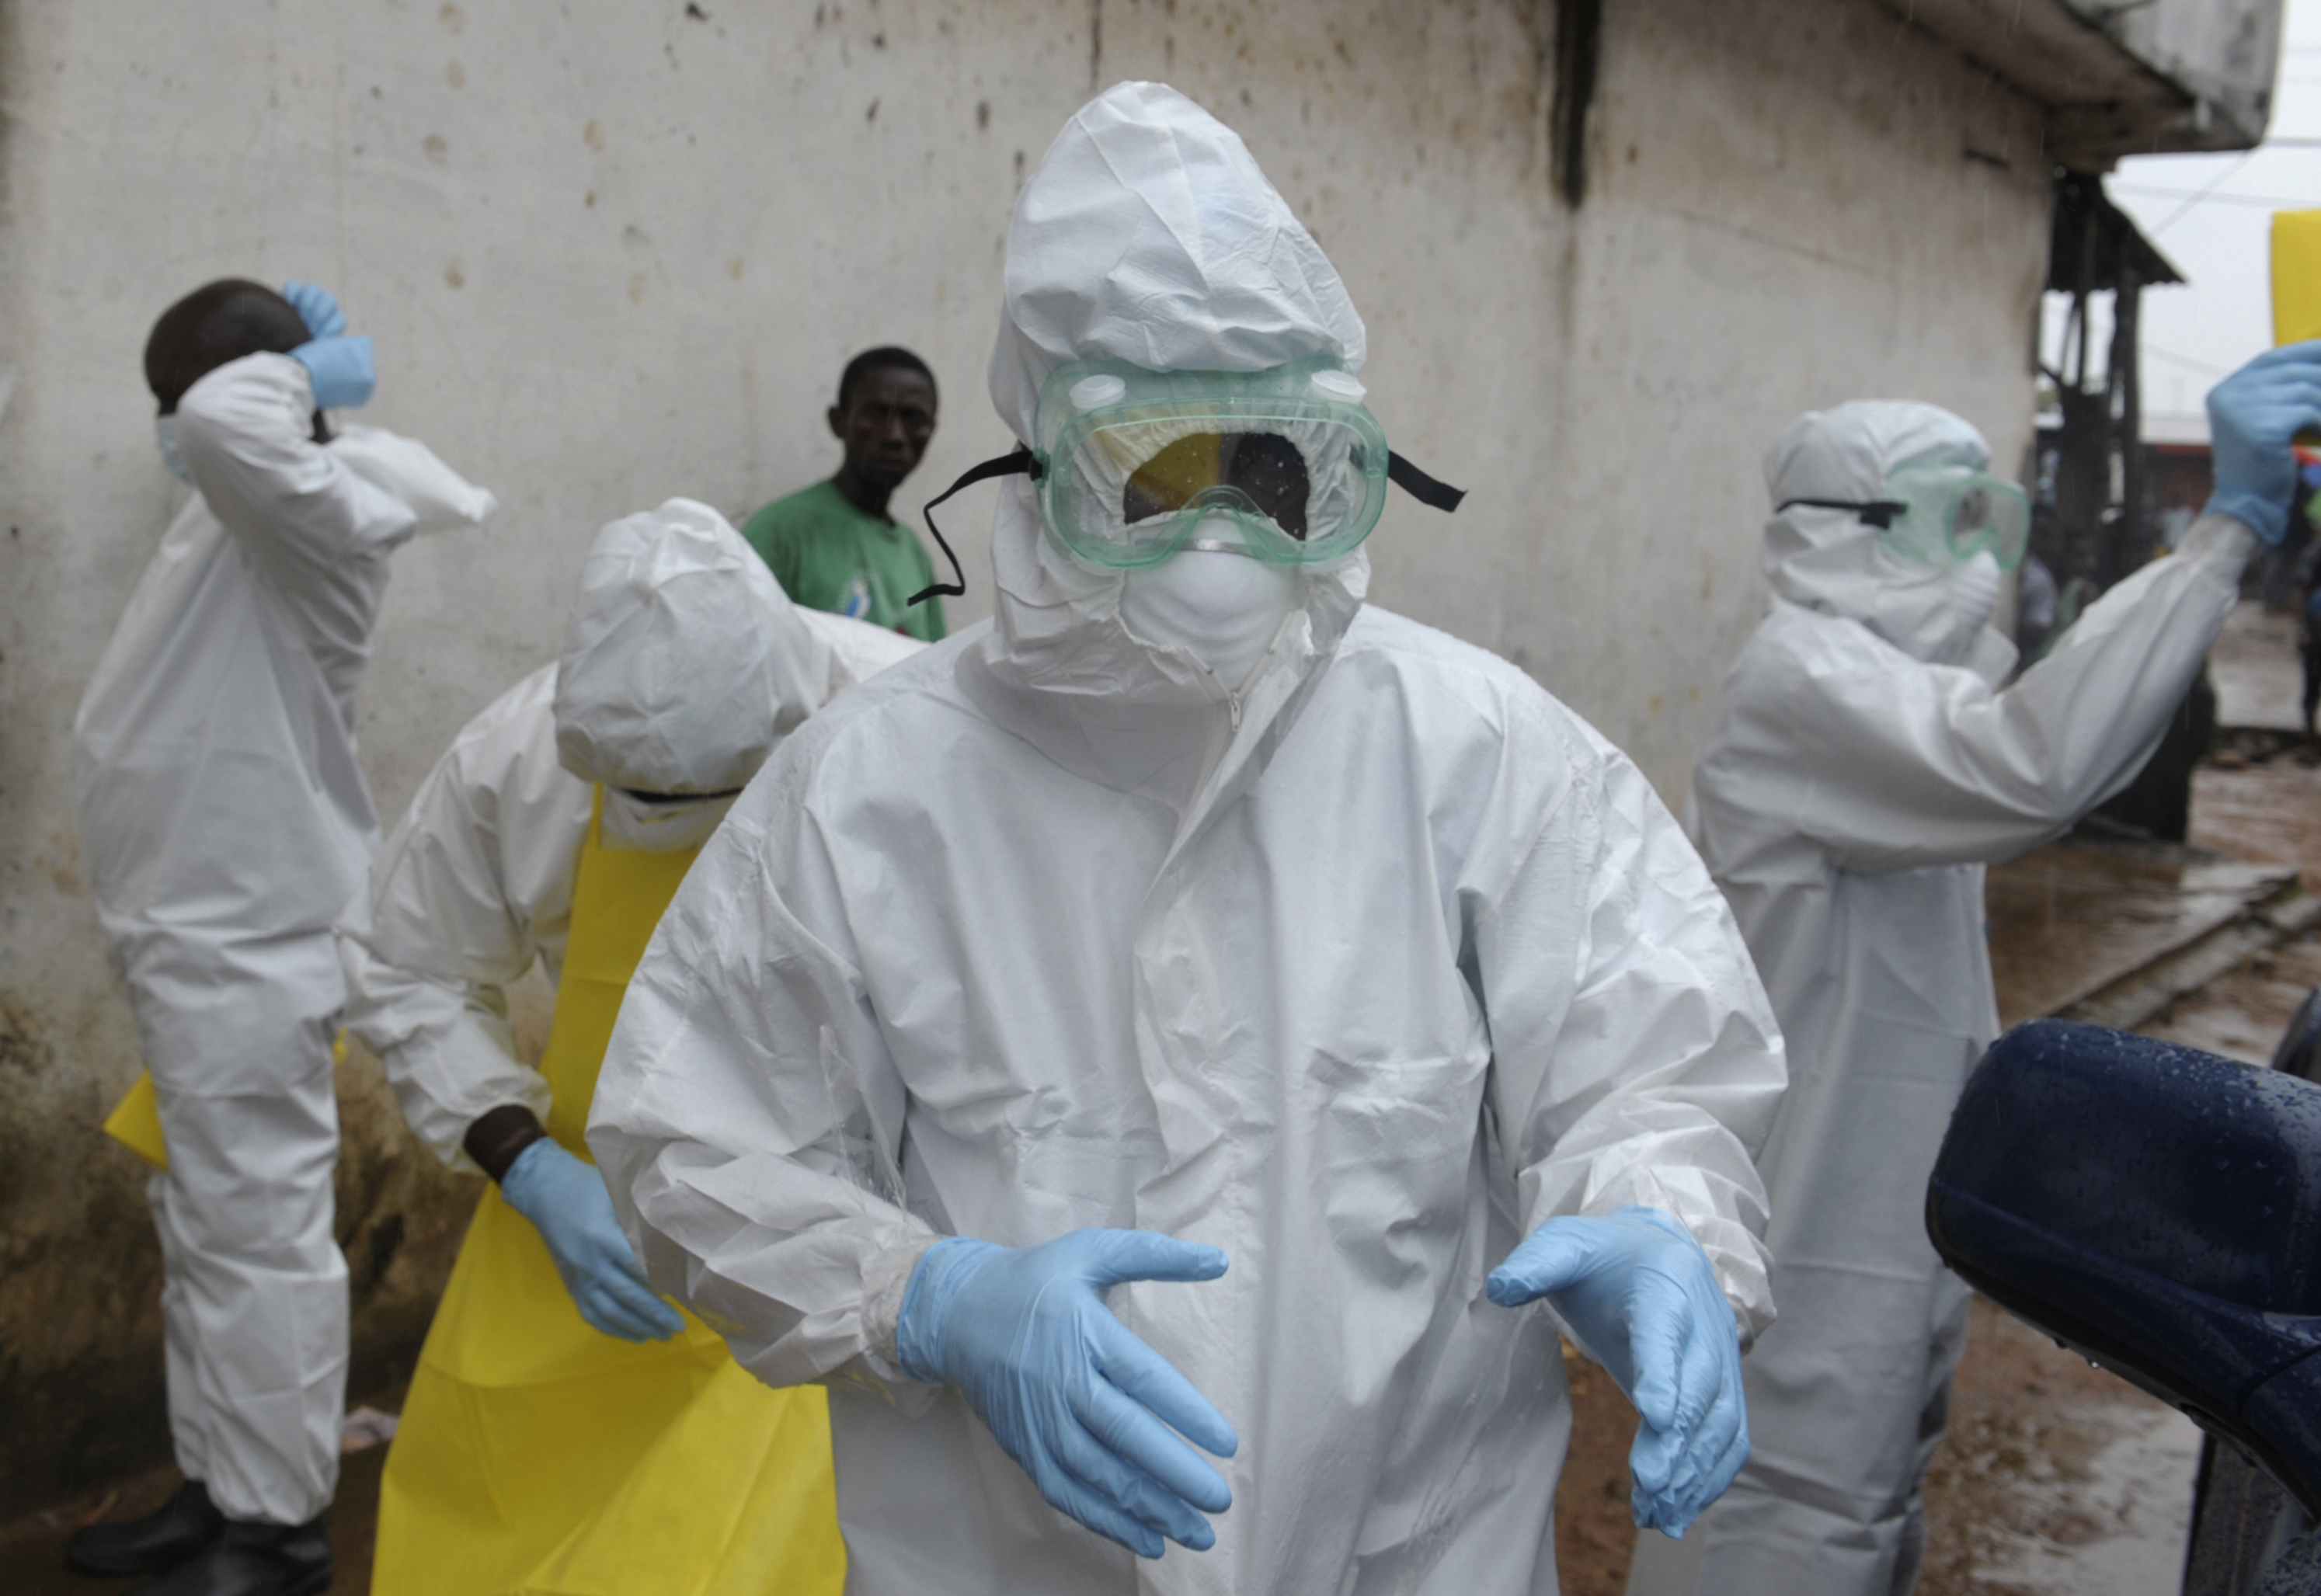 La medida es tomada para evitar el contagio del virus en Costa de Marfil. (Foto: Reuters)